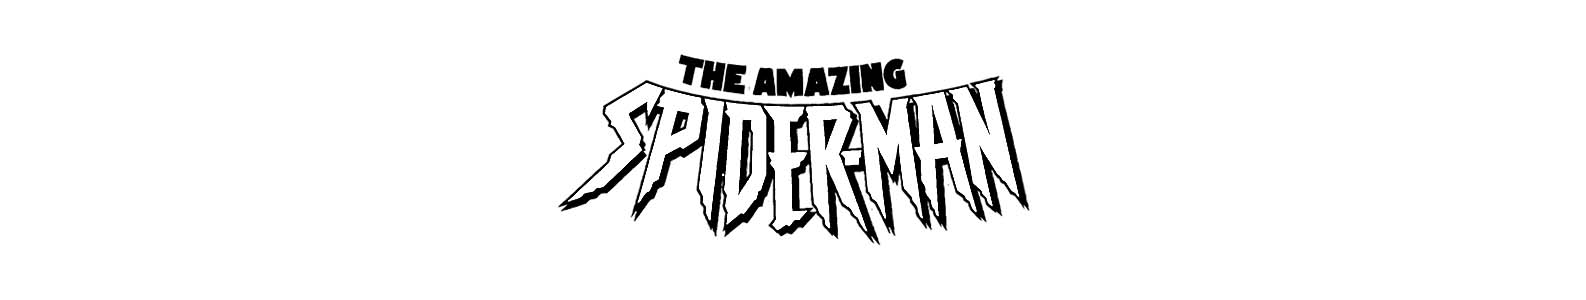 Spider-Man brand header image